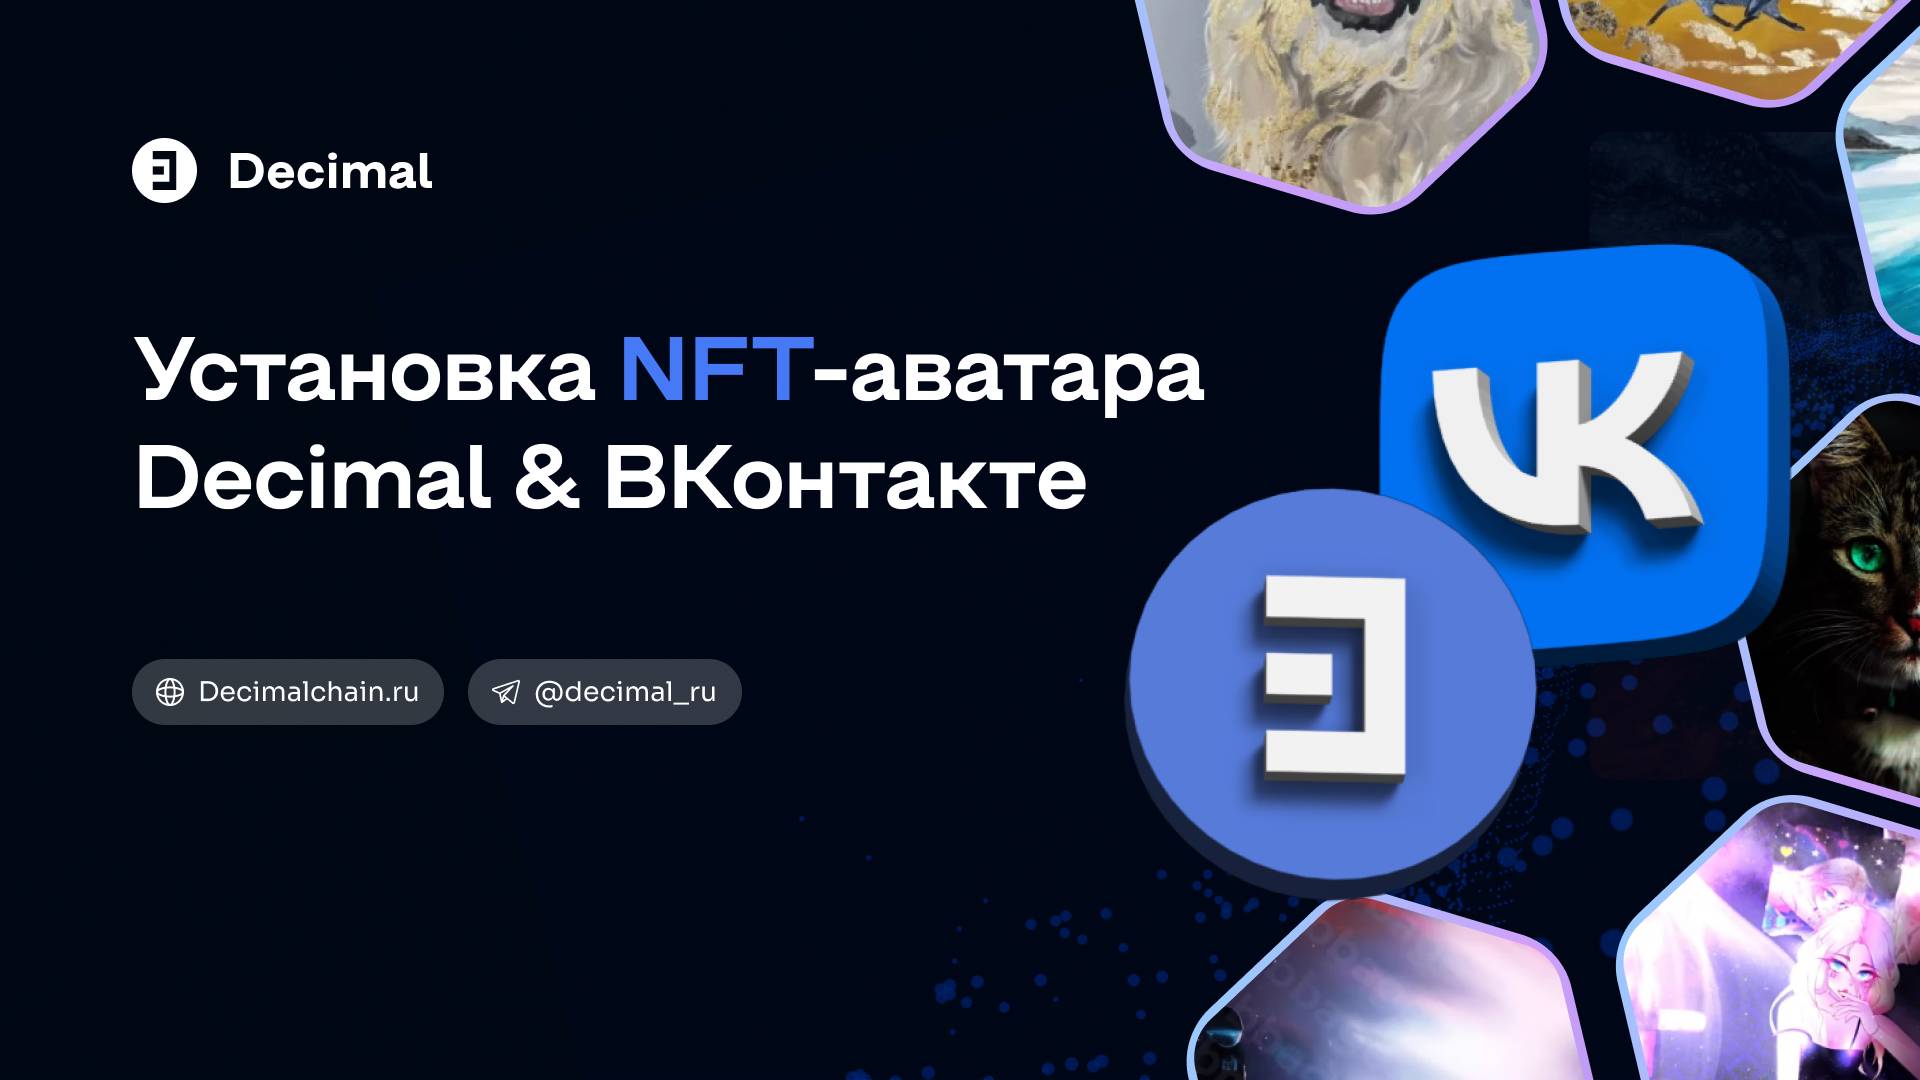 Как поставить NFT-аватар Decimal во ВКонтакте